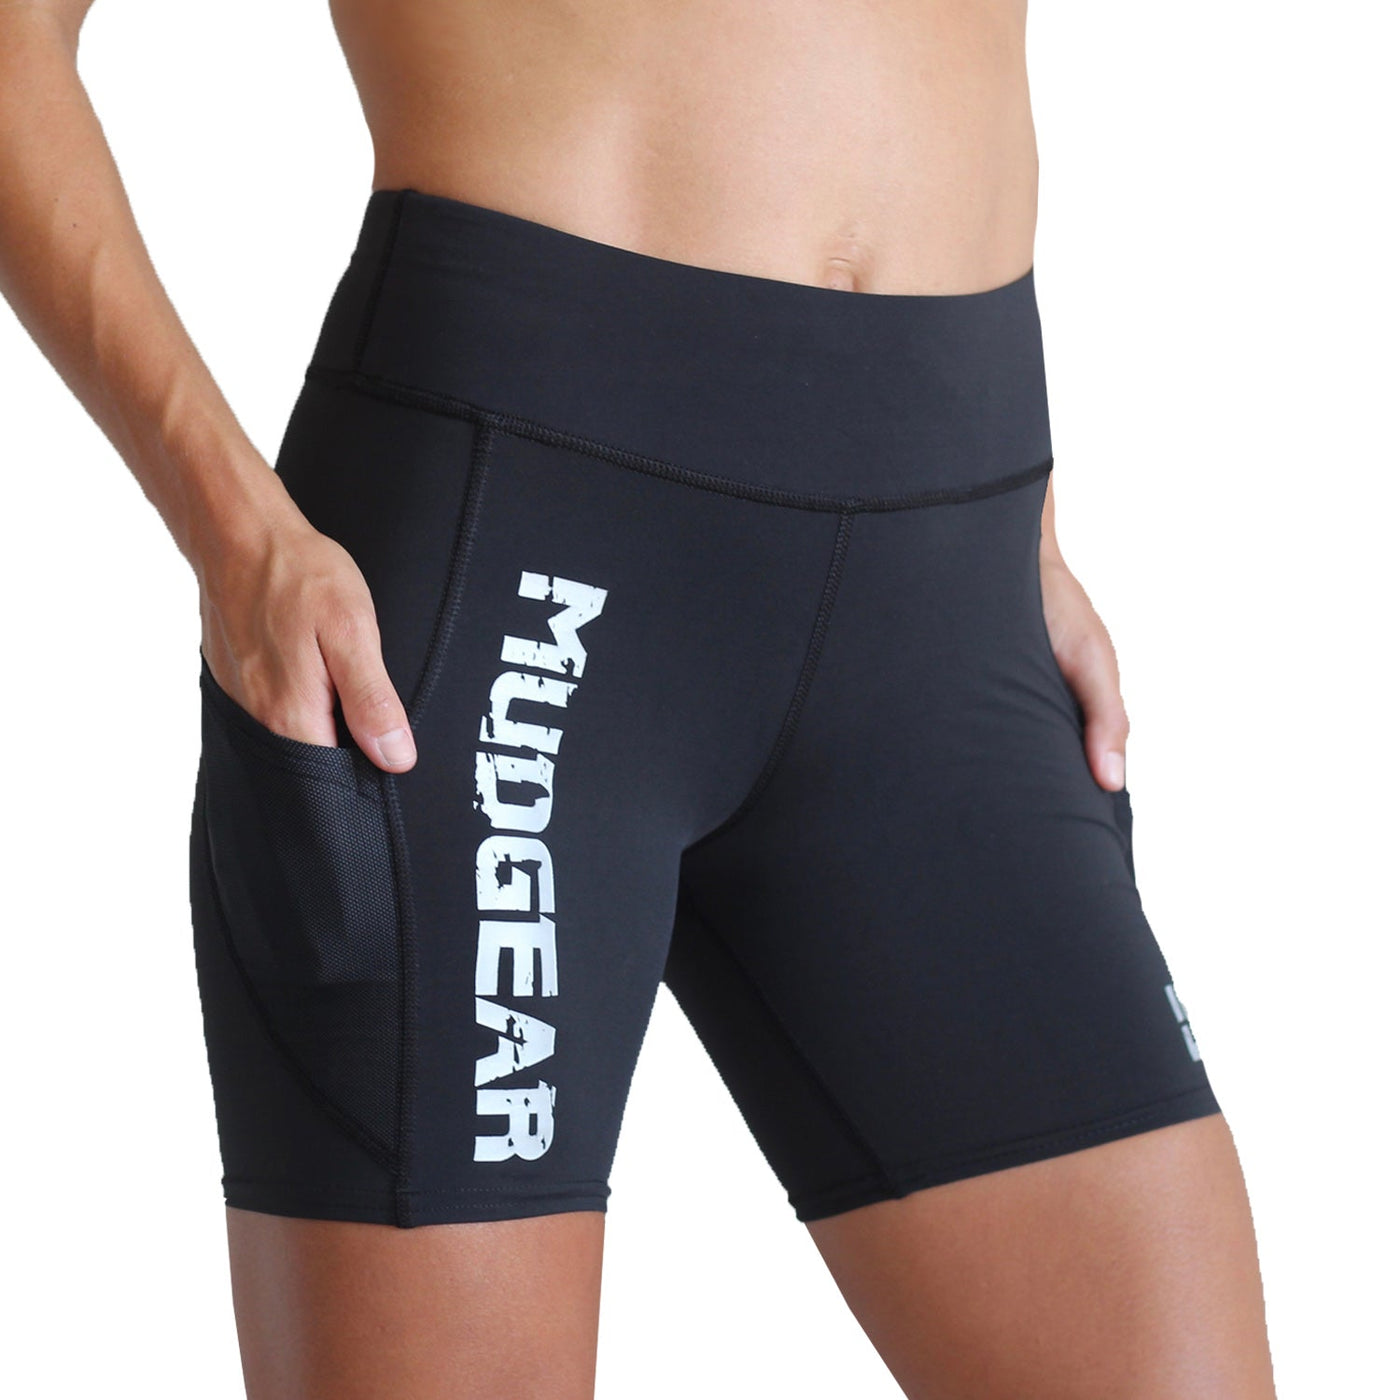 Women's Flex-Fit Compression Shorts